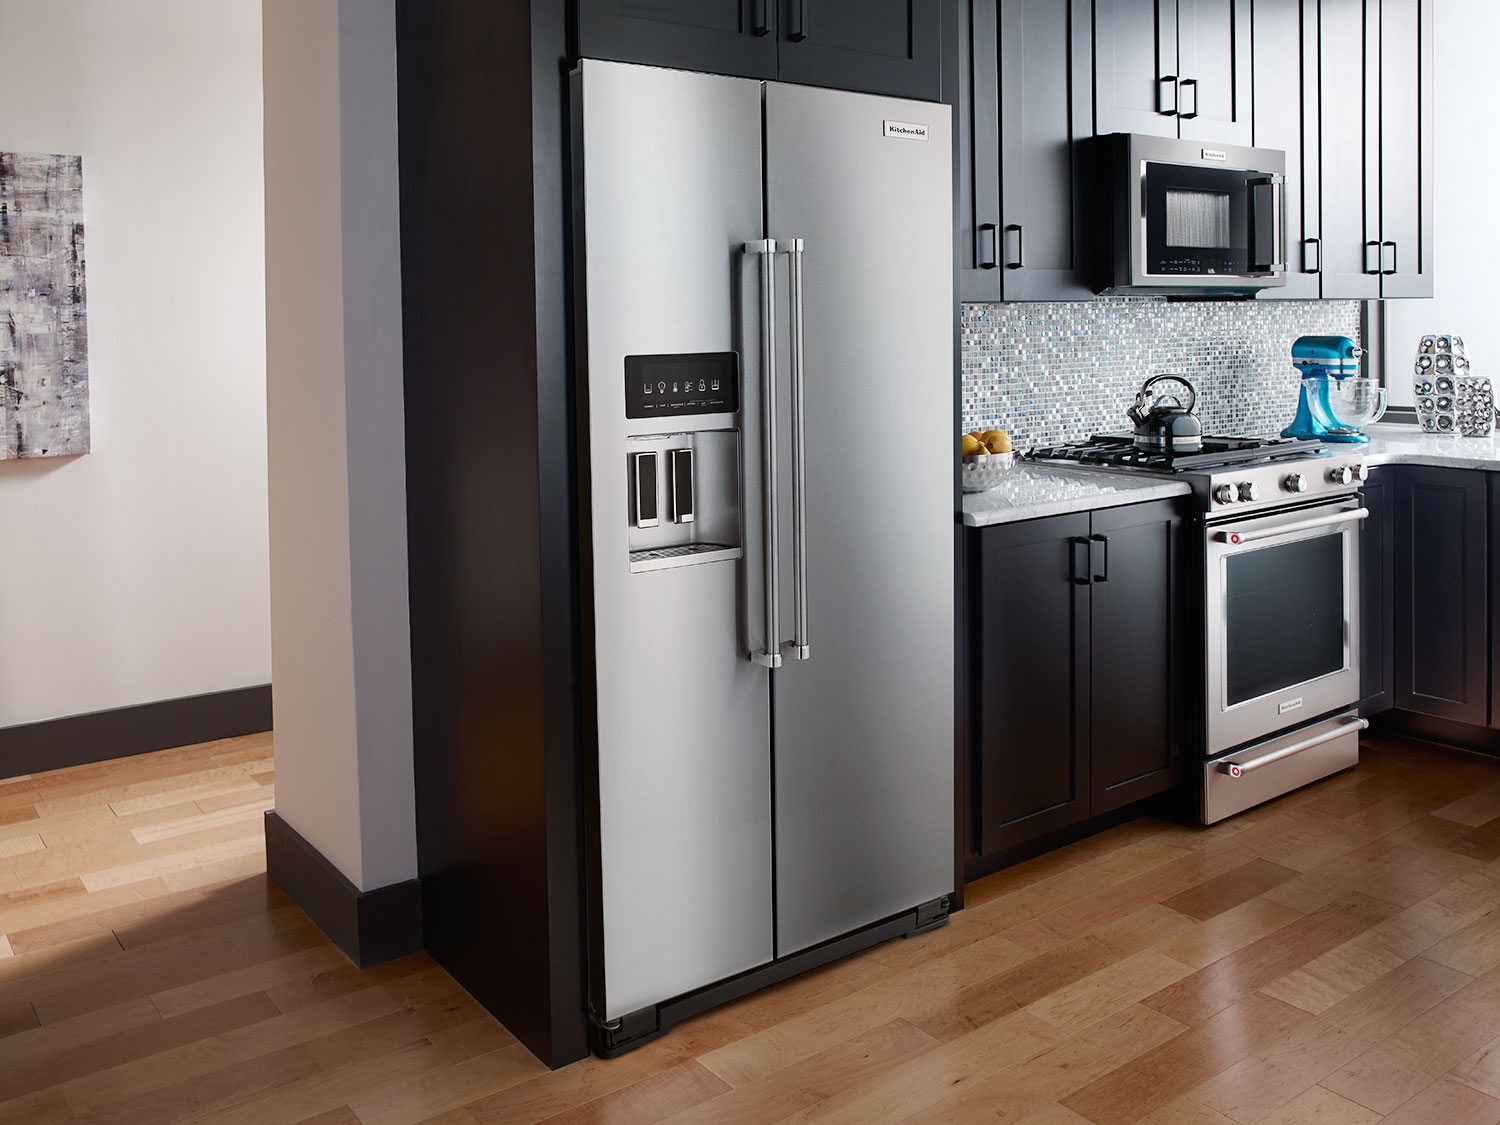 Tư vấn giúp bạn cách chọn mua chiếc tủ lạnh side by side tốt nhất.